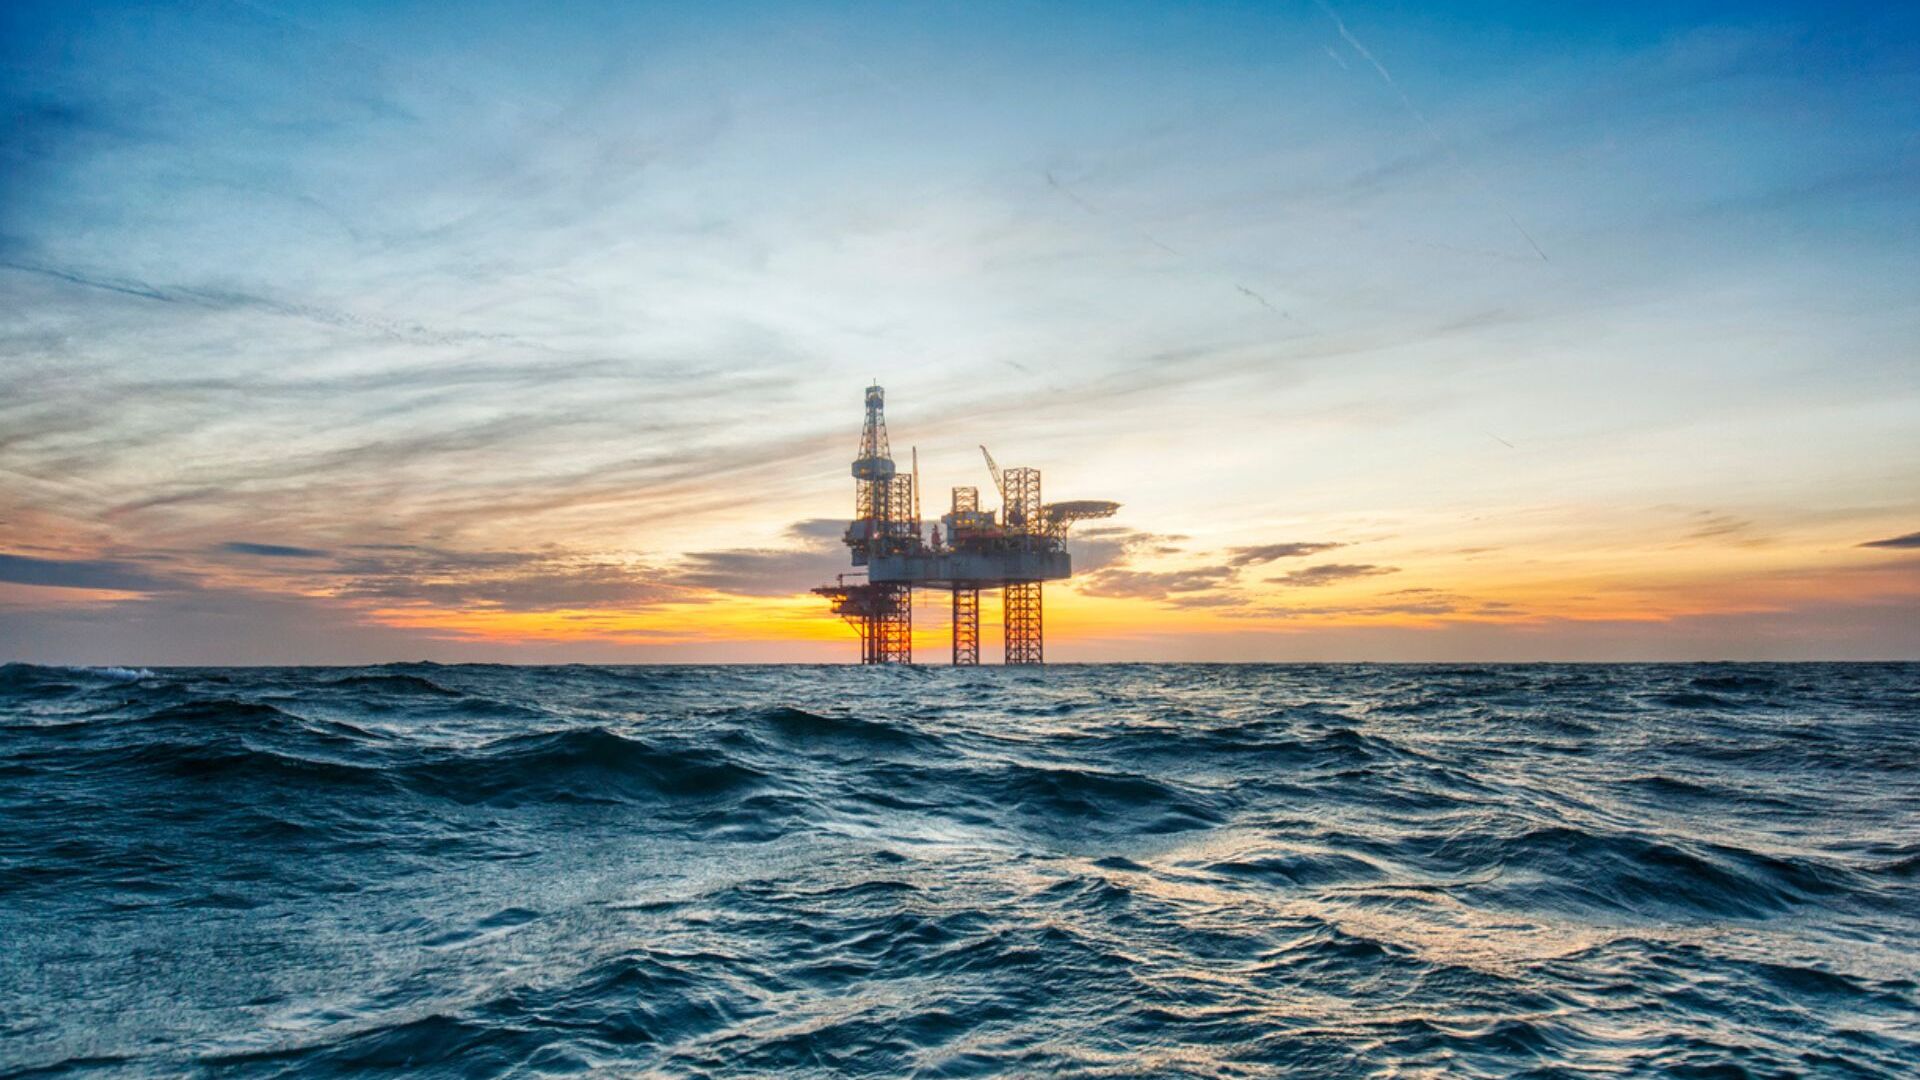 Petrolio: una stazione petrolifera in mezzo al mare